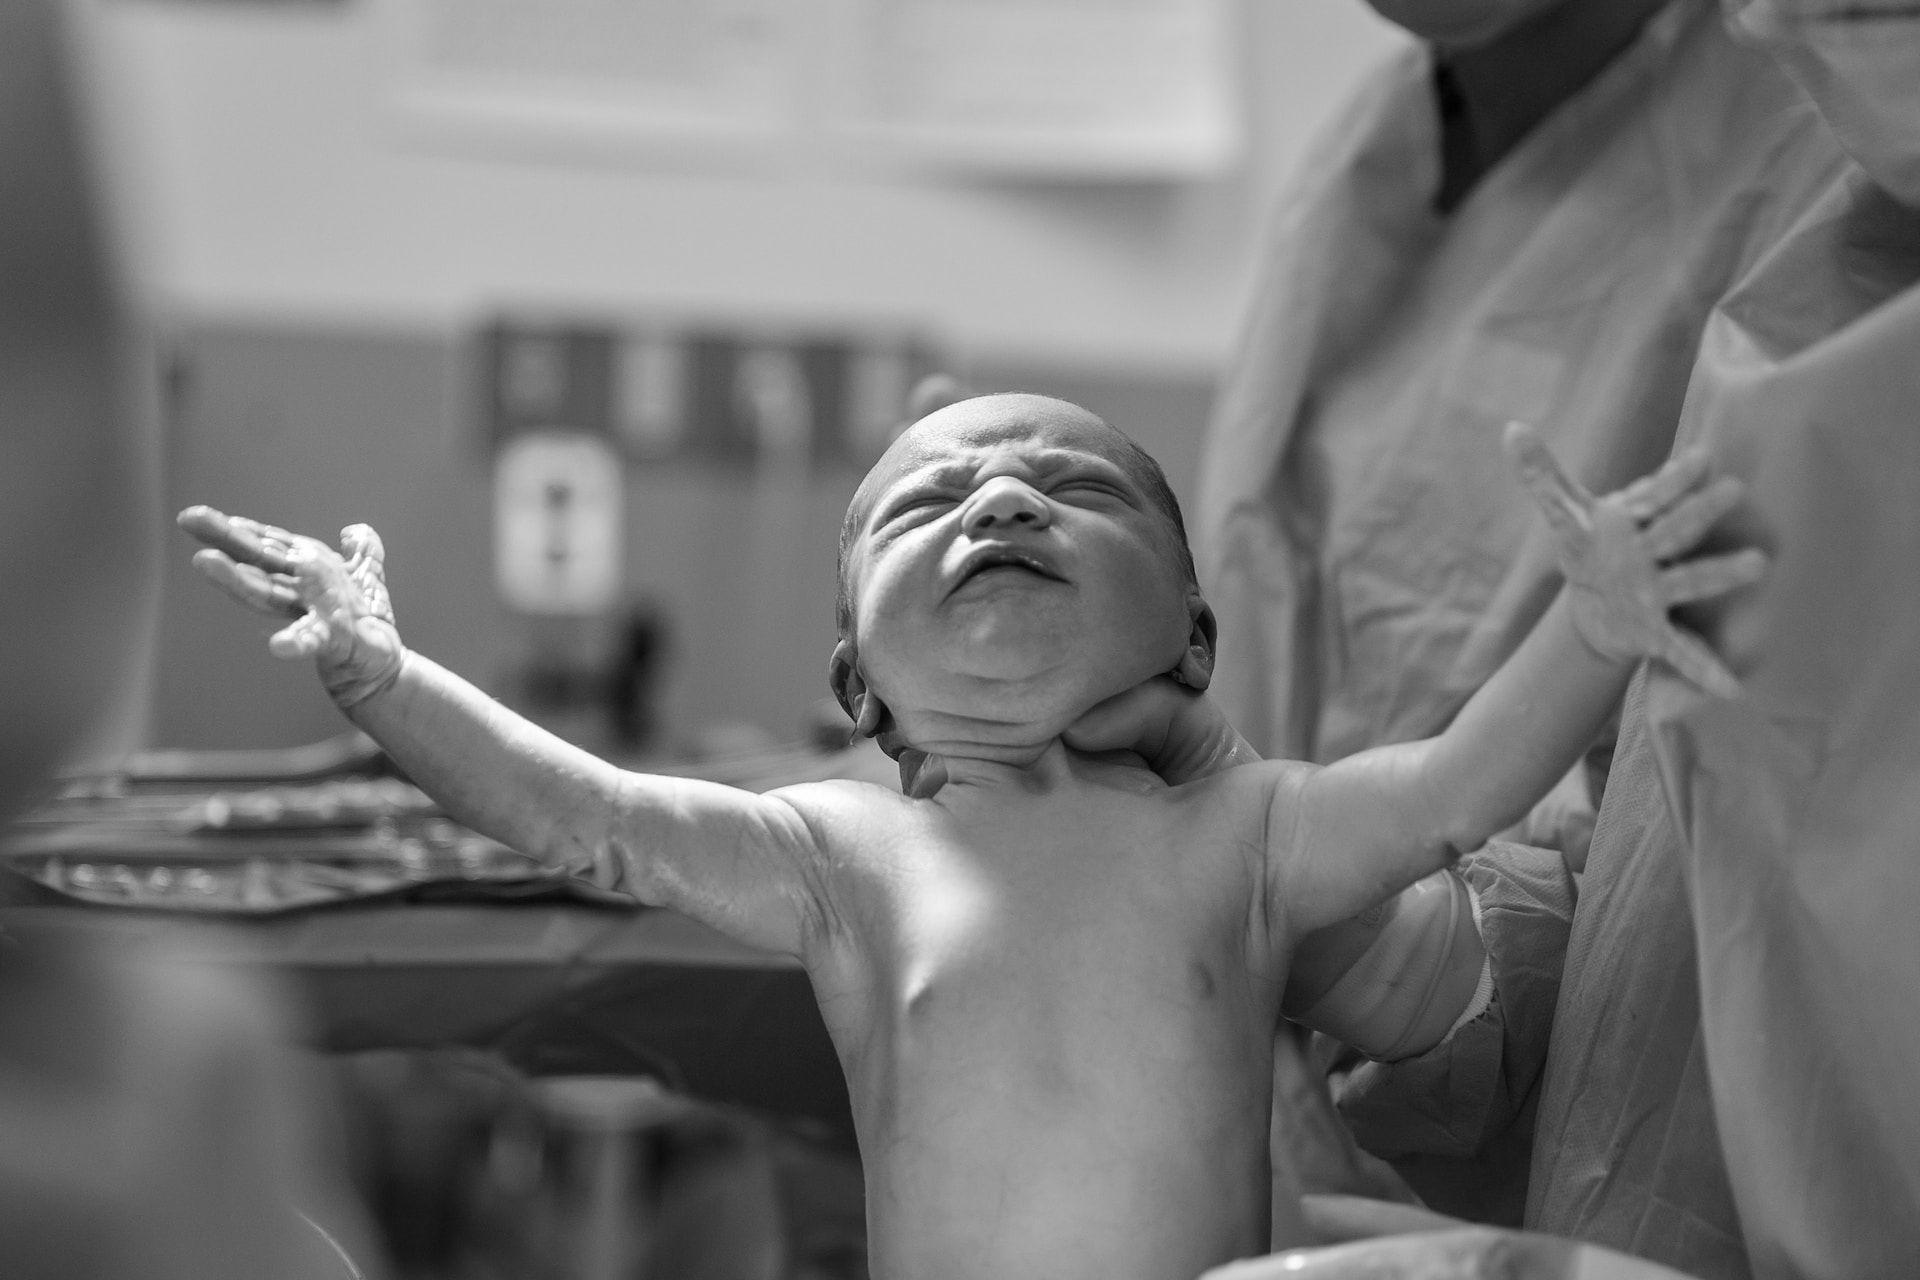 photo en noir et blanc d'un nouveau né écartant les bras - Photo by Alex Hockett on https://unsplash.com/fr/photos/GiP2H_SKh7E